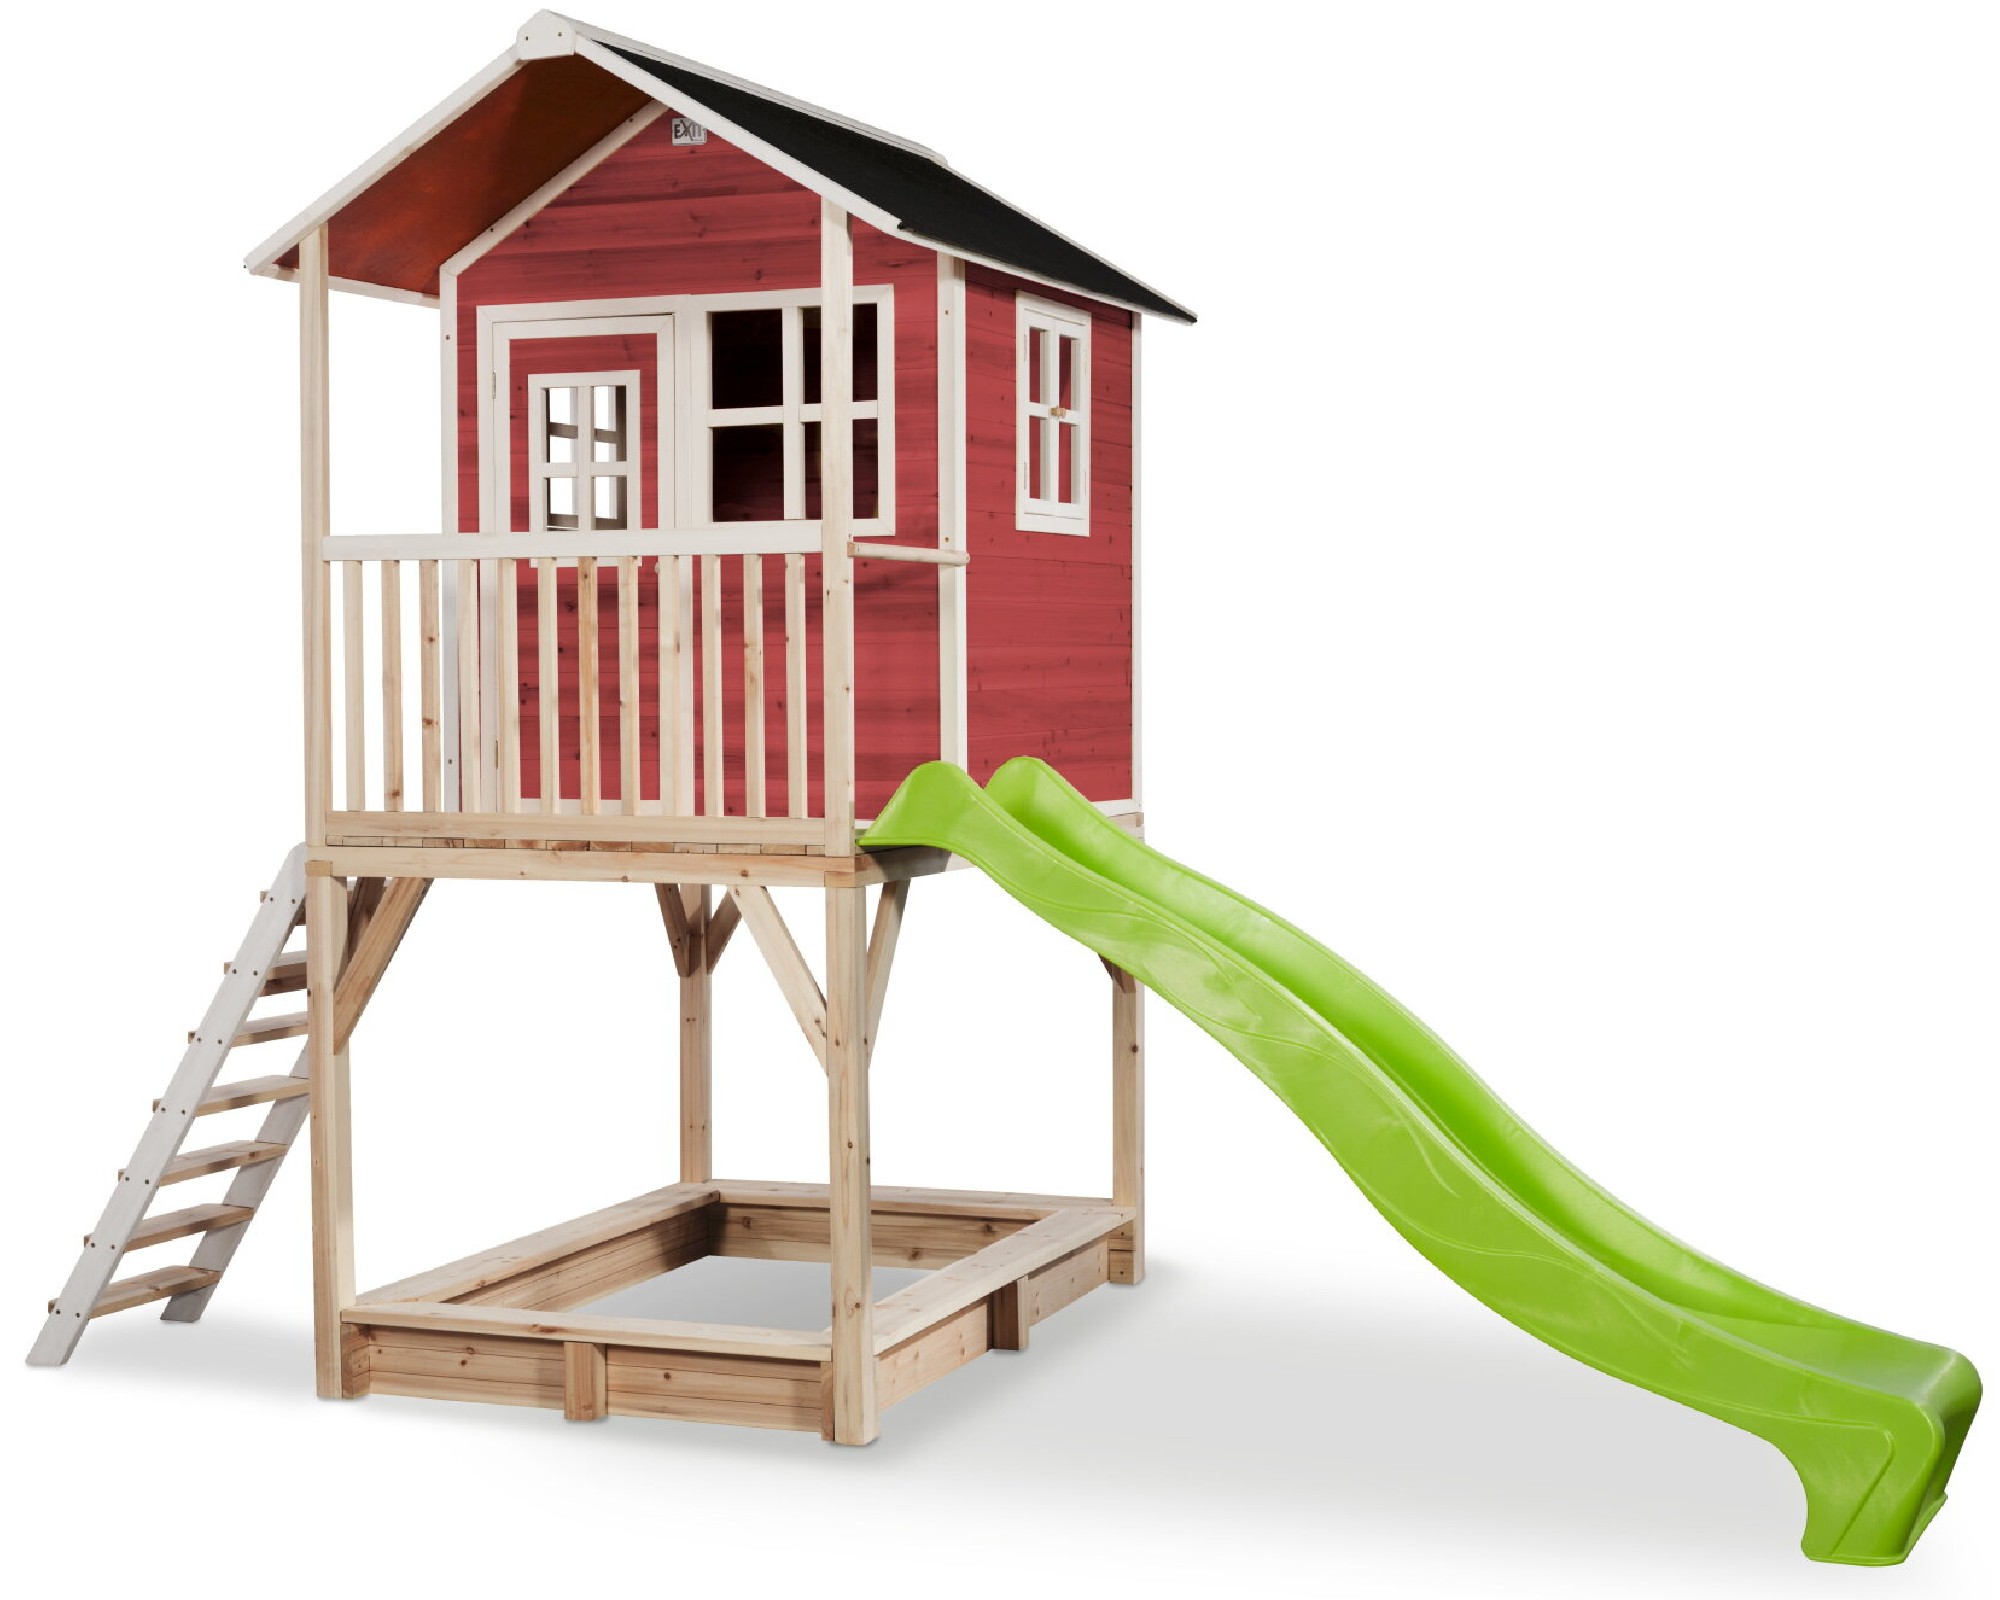 Drewniany domek ogrodowy dla dzieci Loft 700 (schodki, zjedalnia, taras, piaskownica) - czerwony